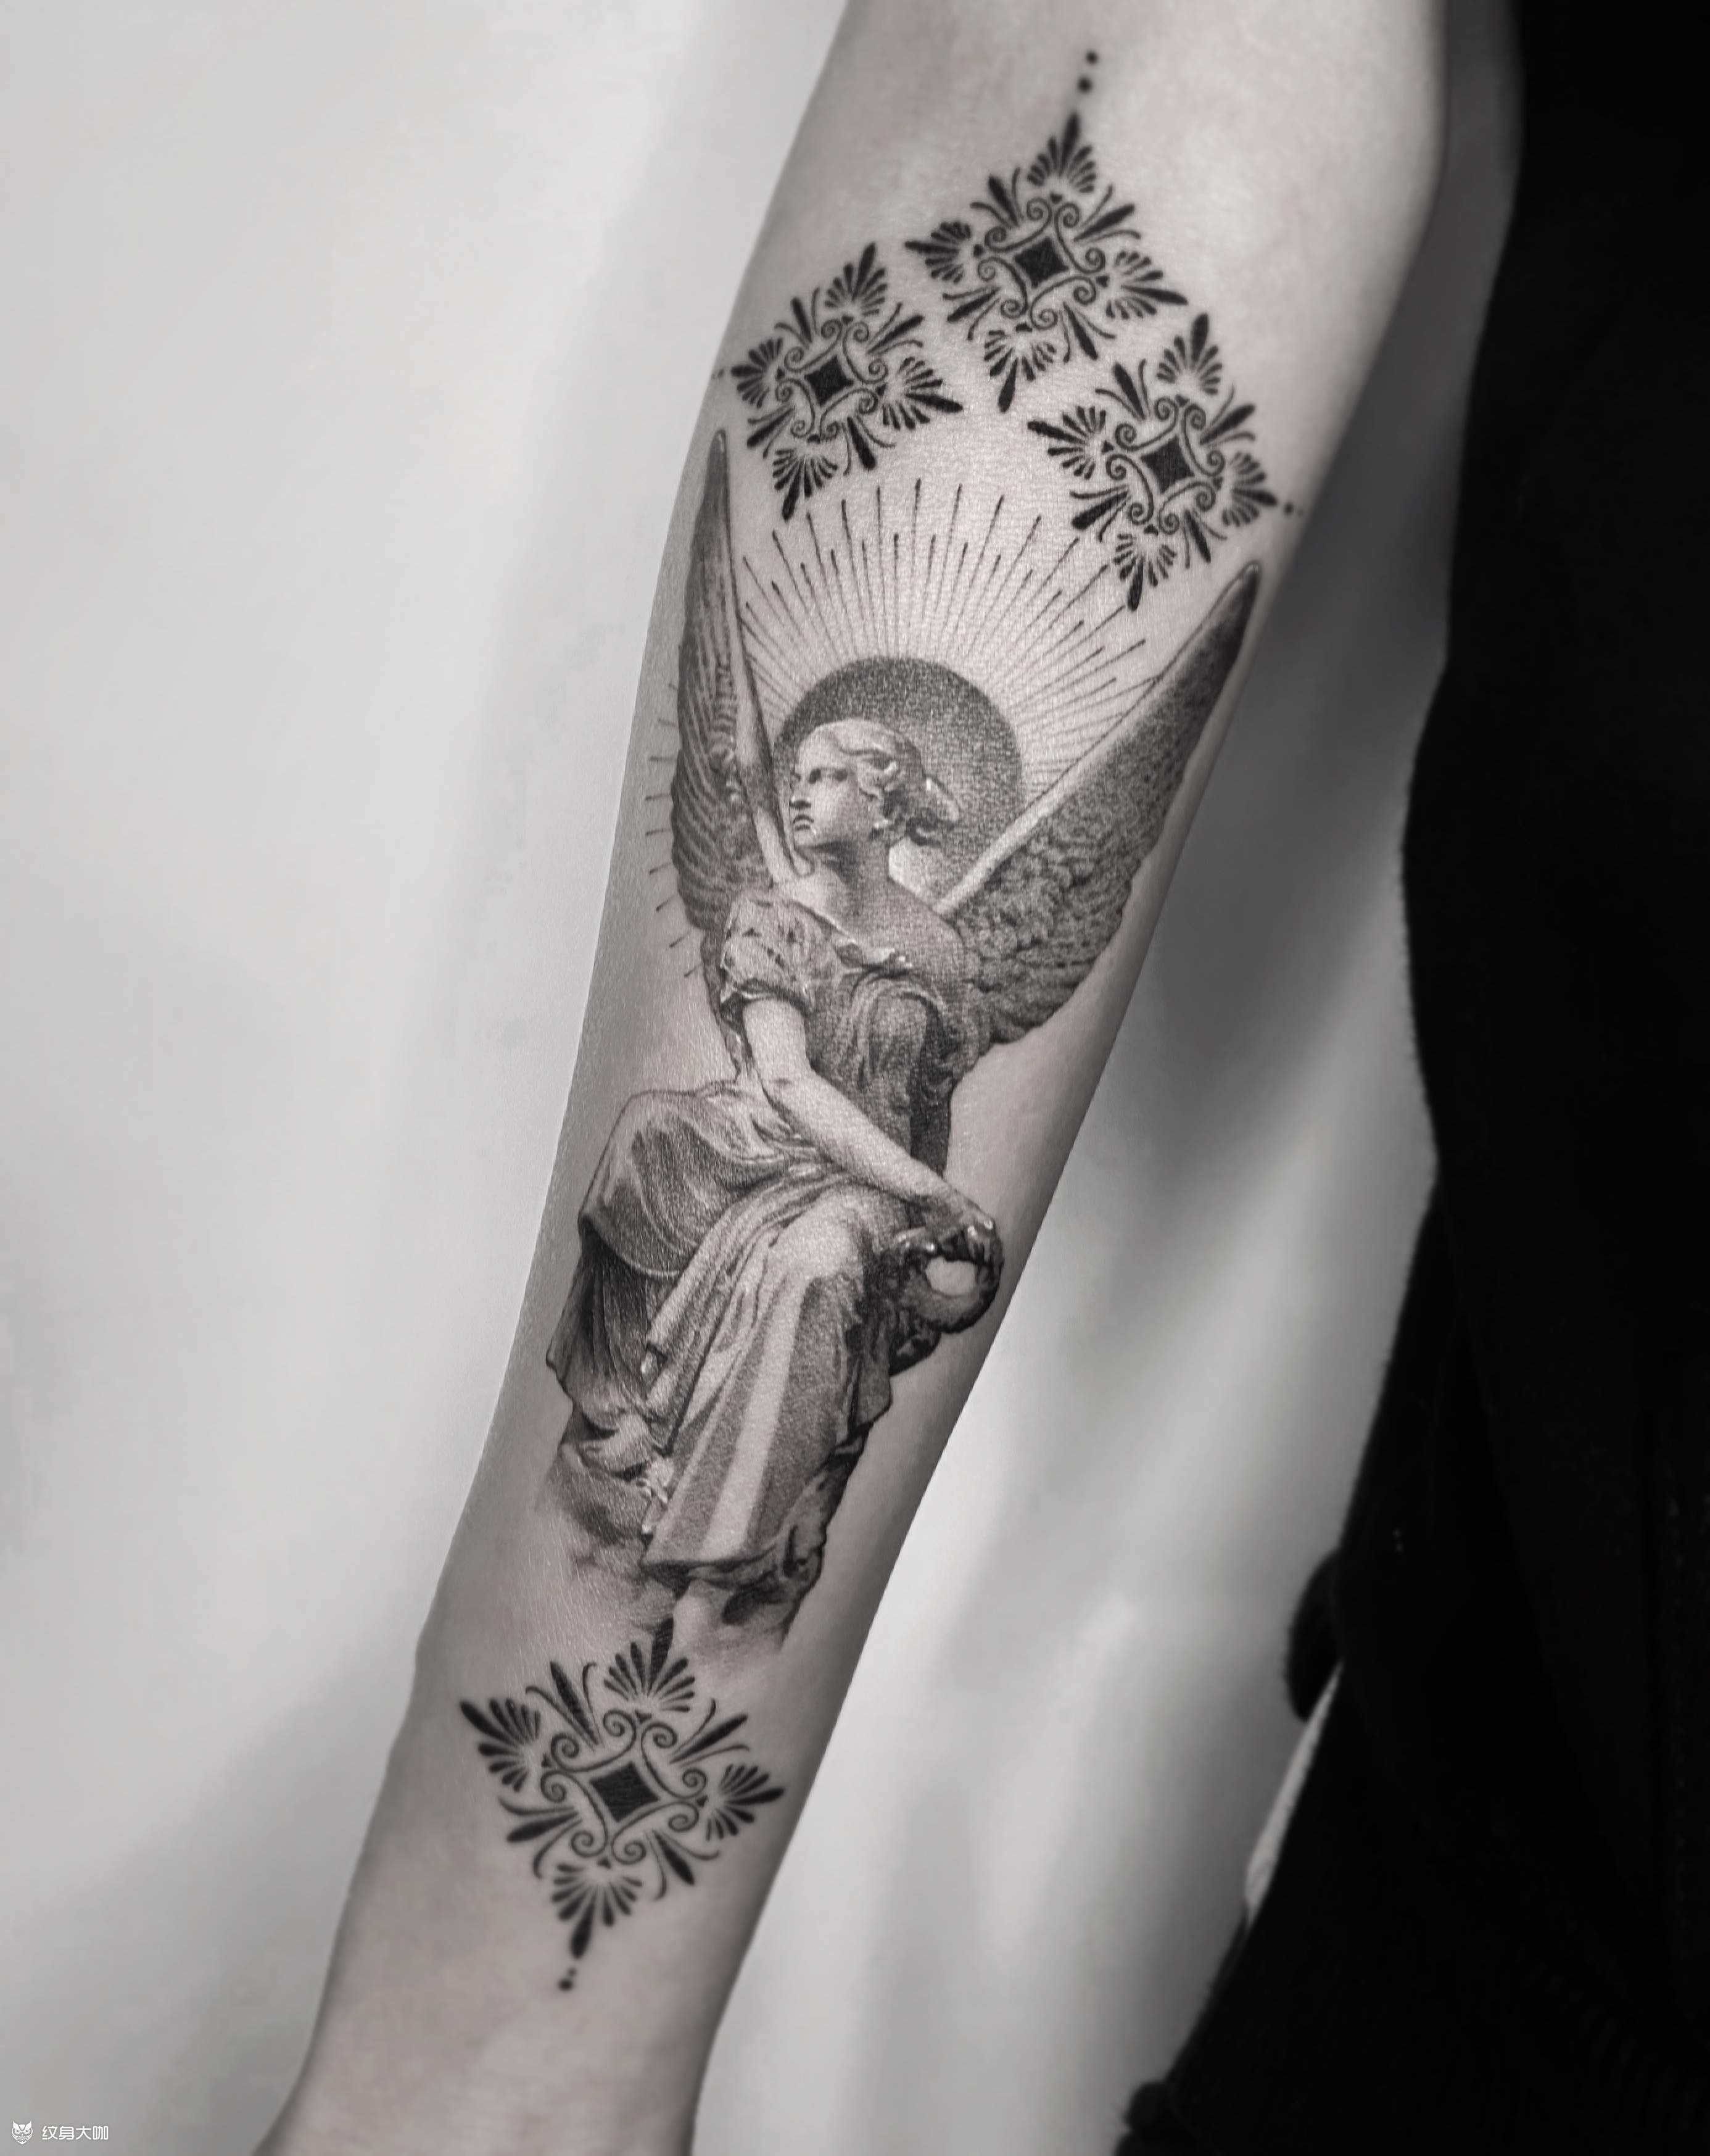 天使纹身手稿花臂图片